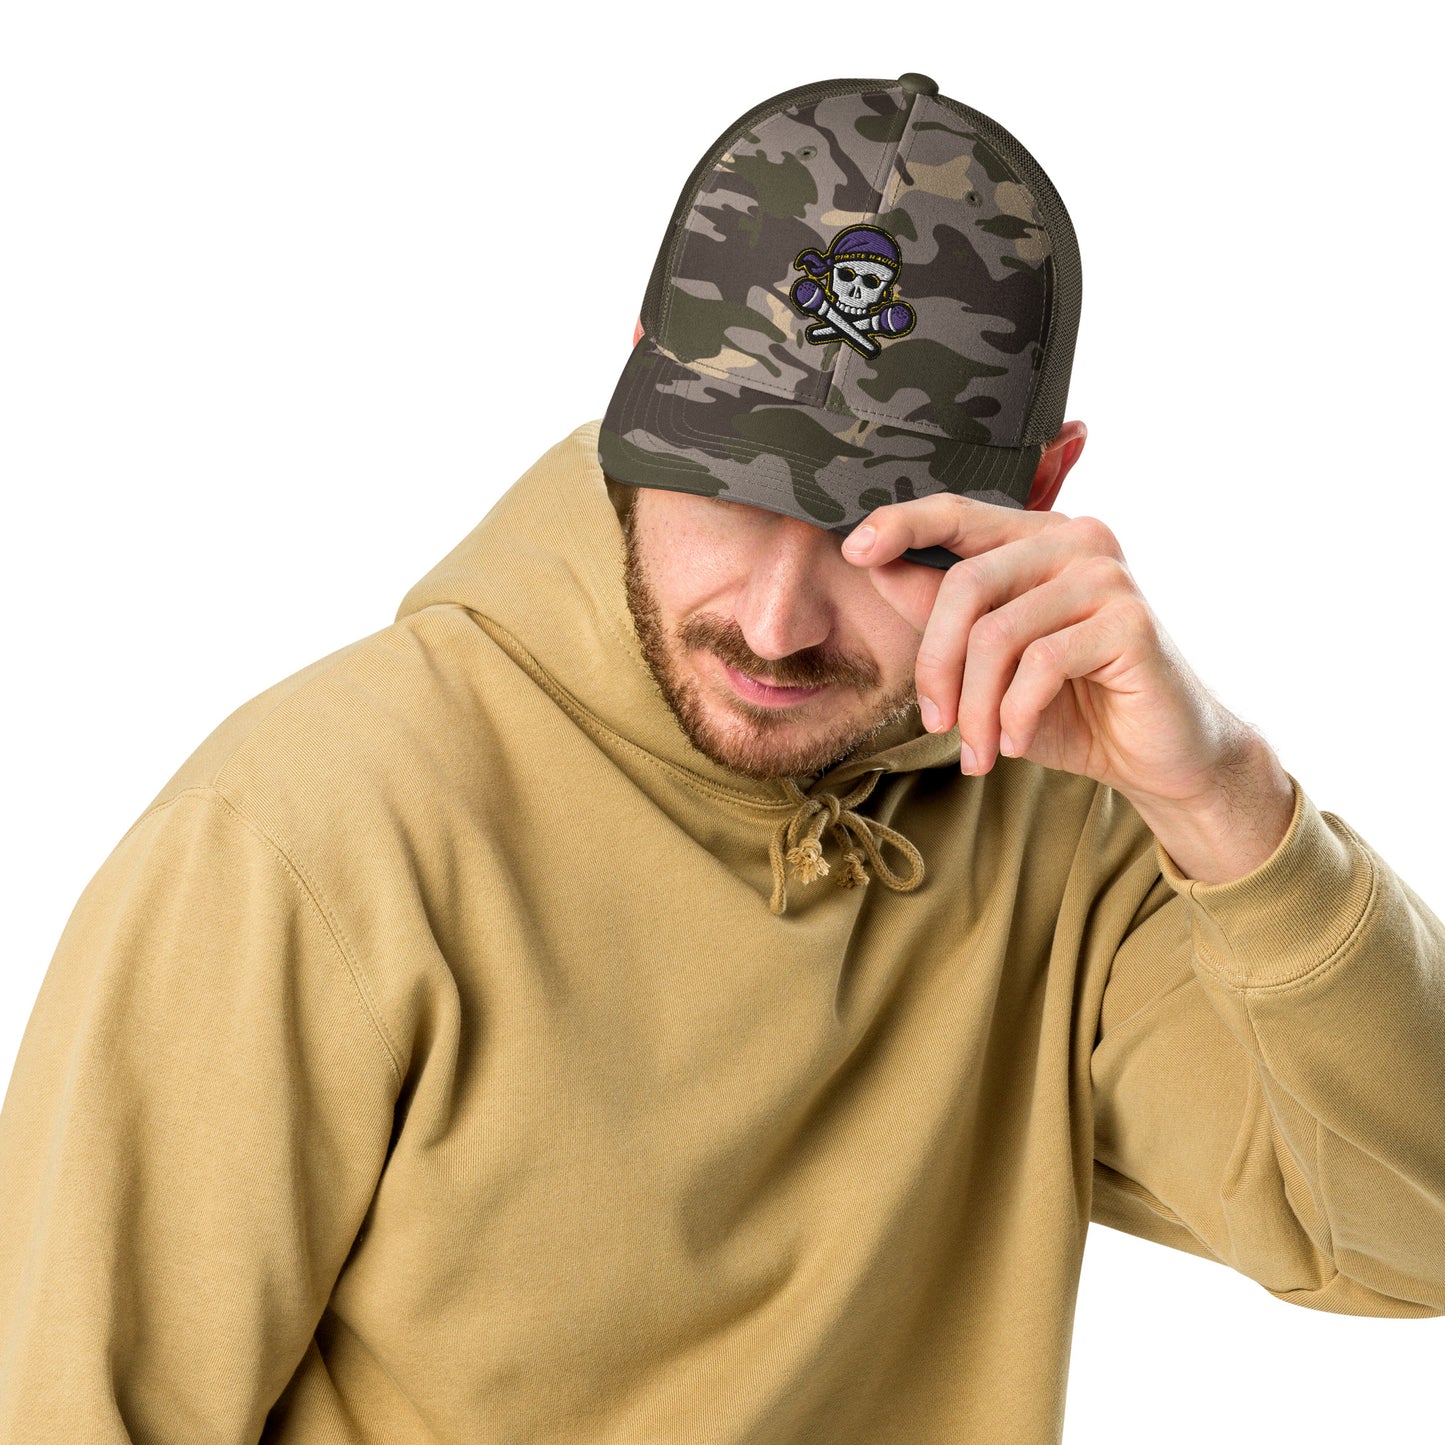 Pirate Radio camouflage trucker hat